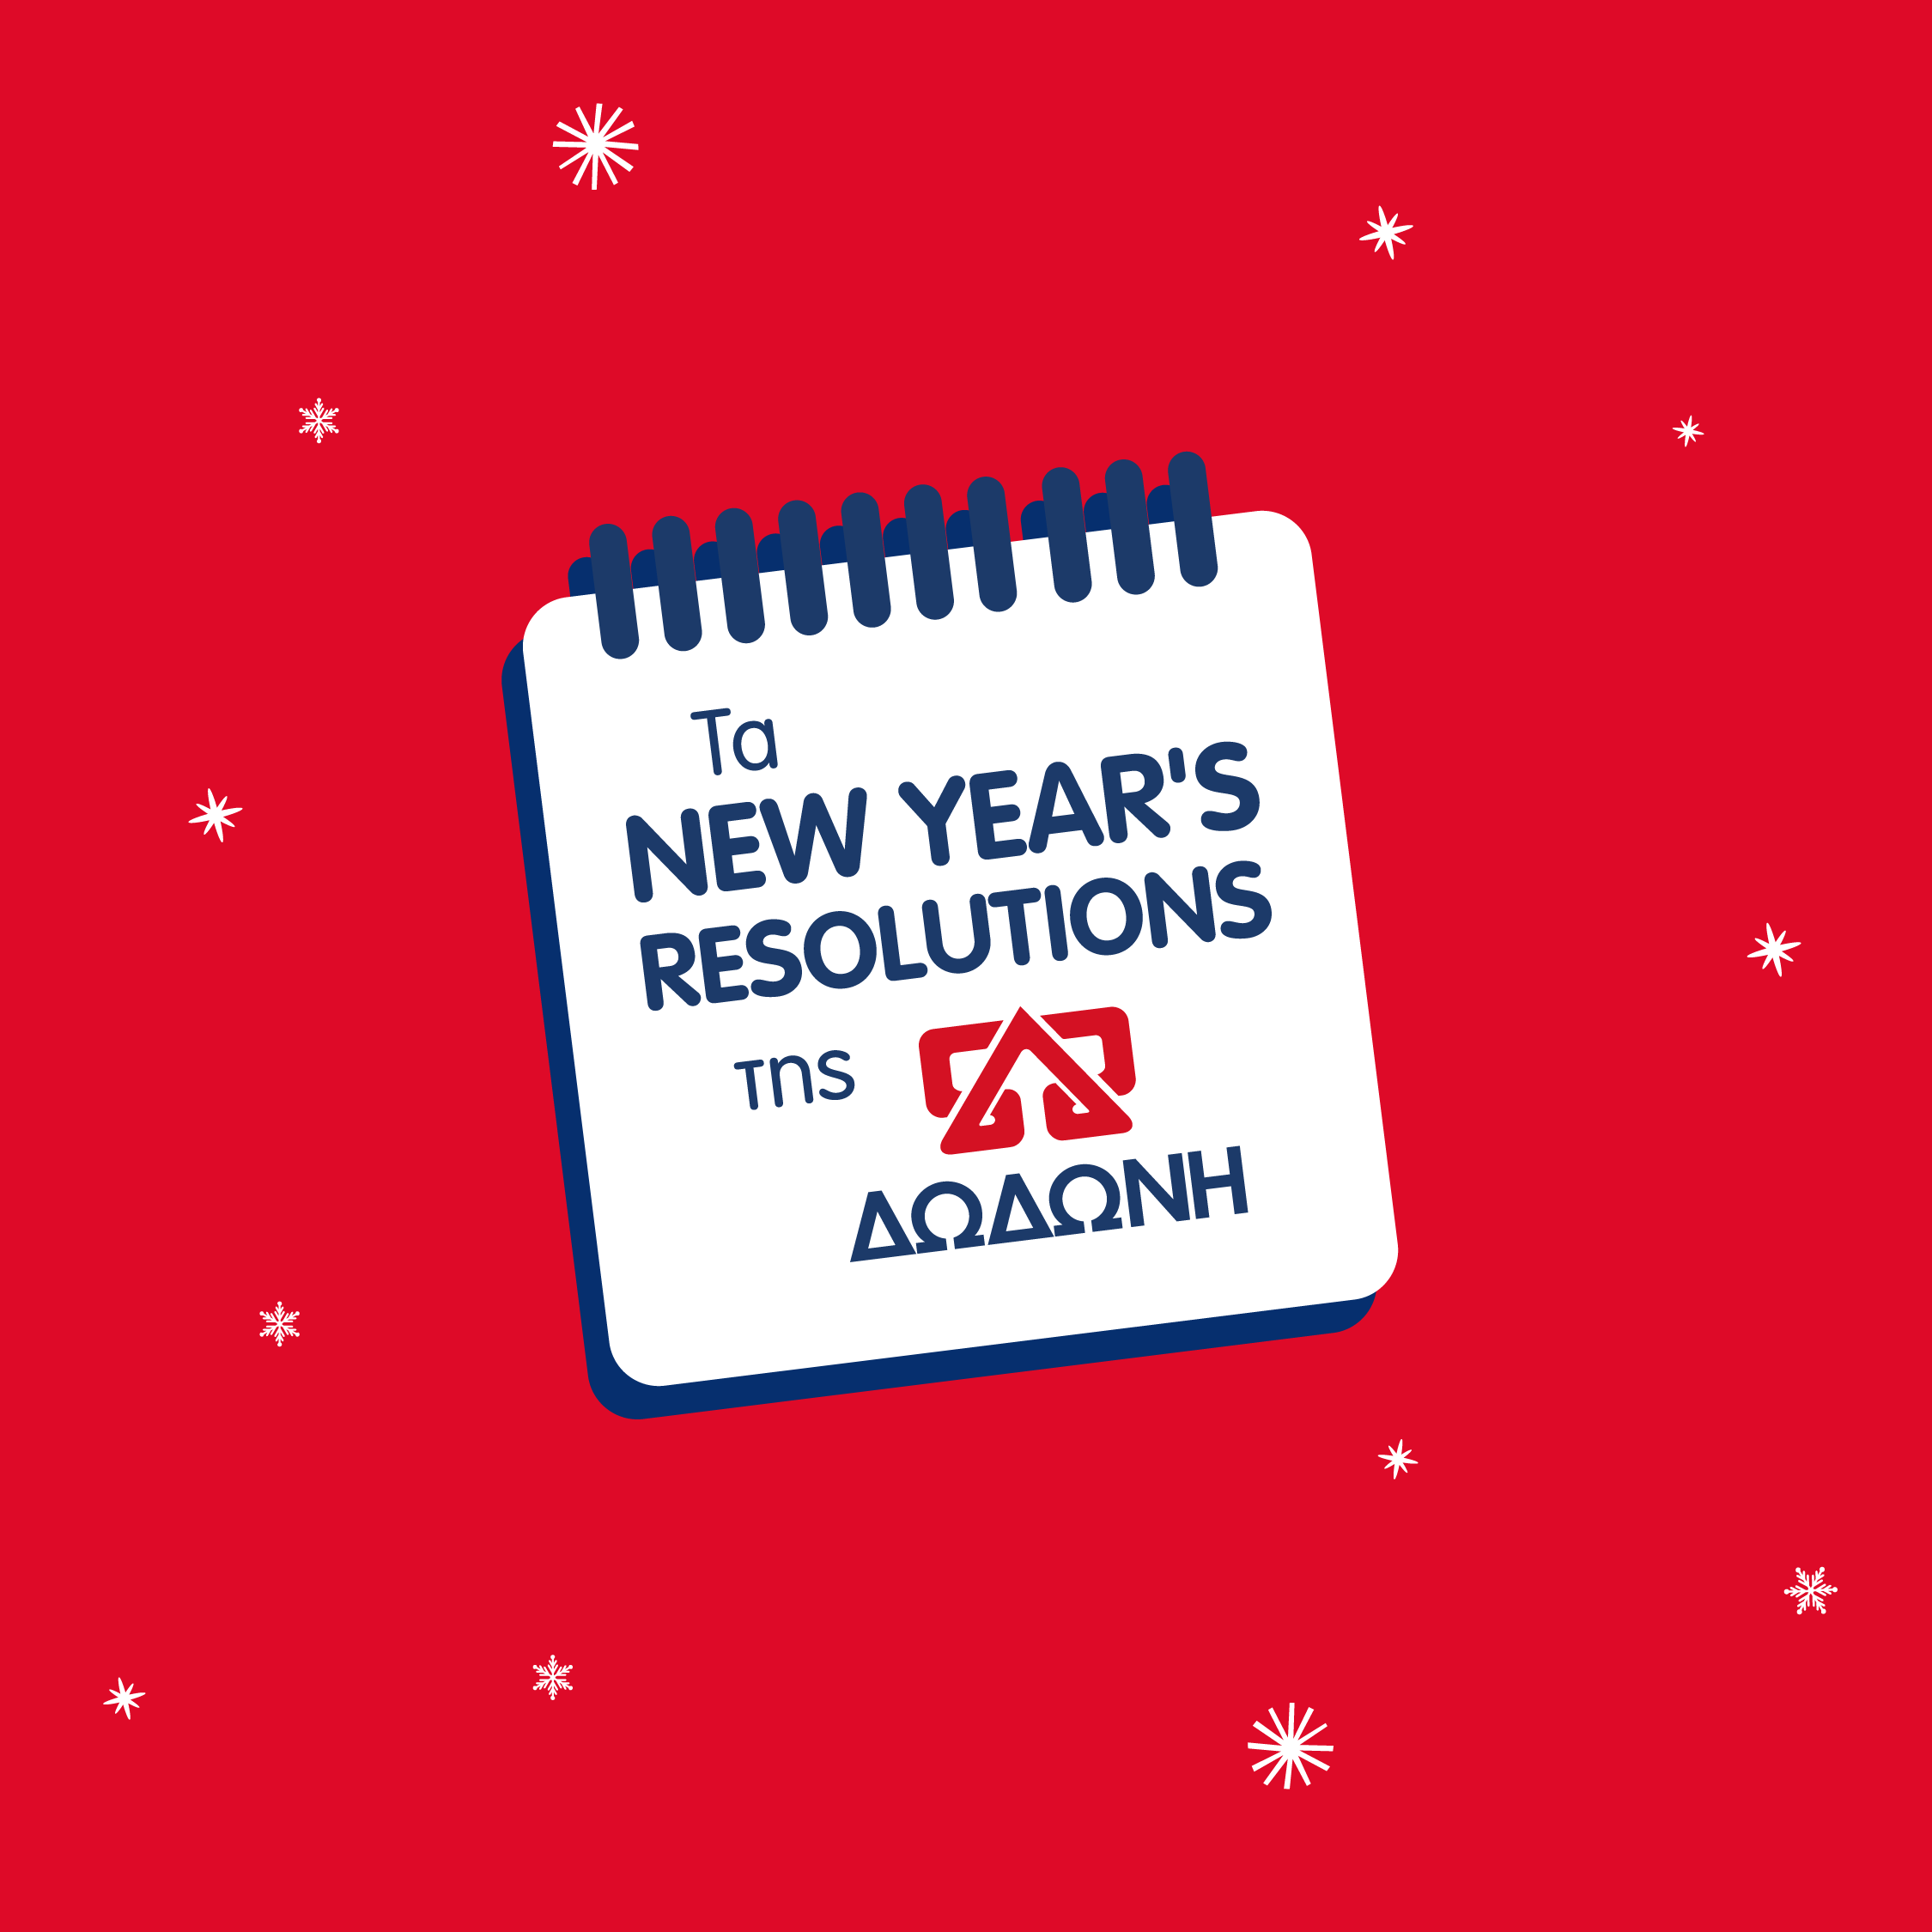 ΔΩΔΩΝΗ: New Year’s Resolutions